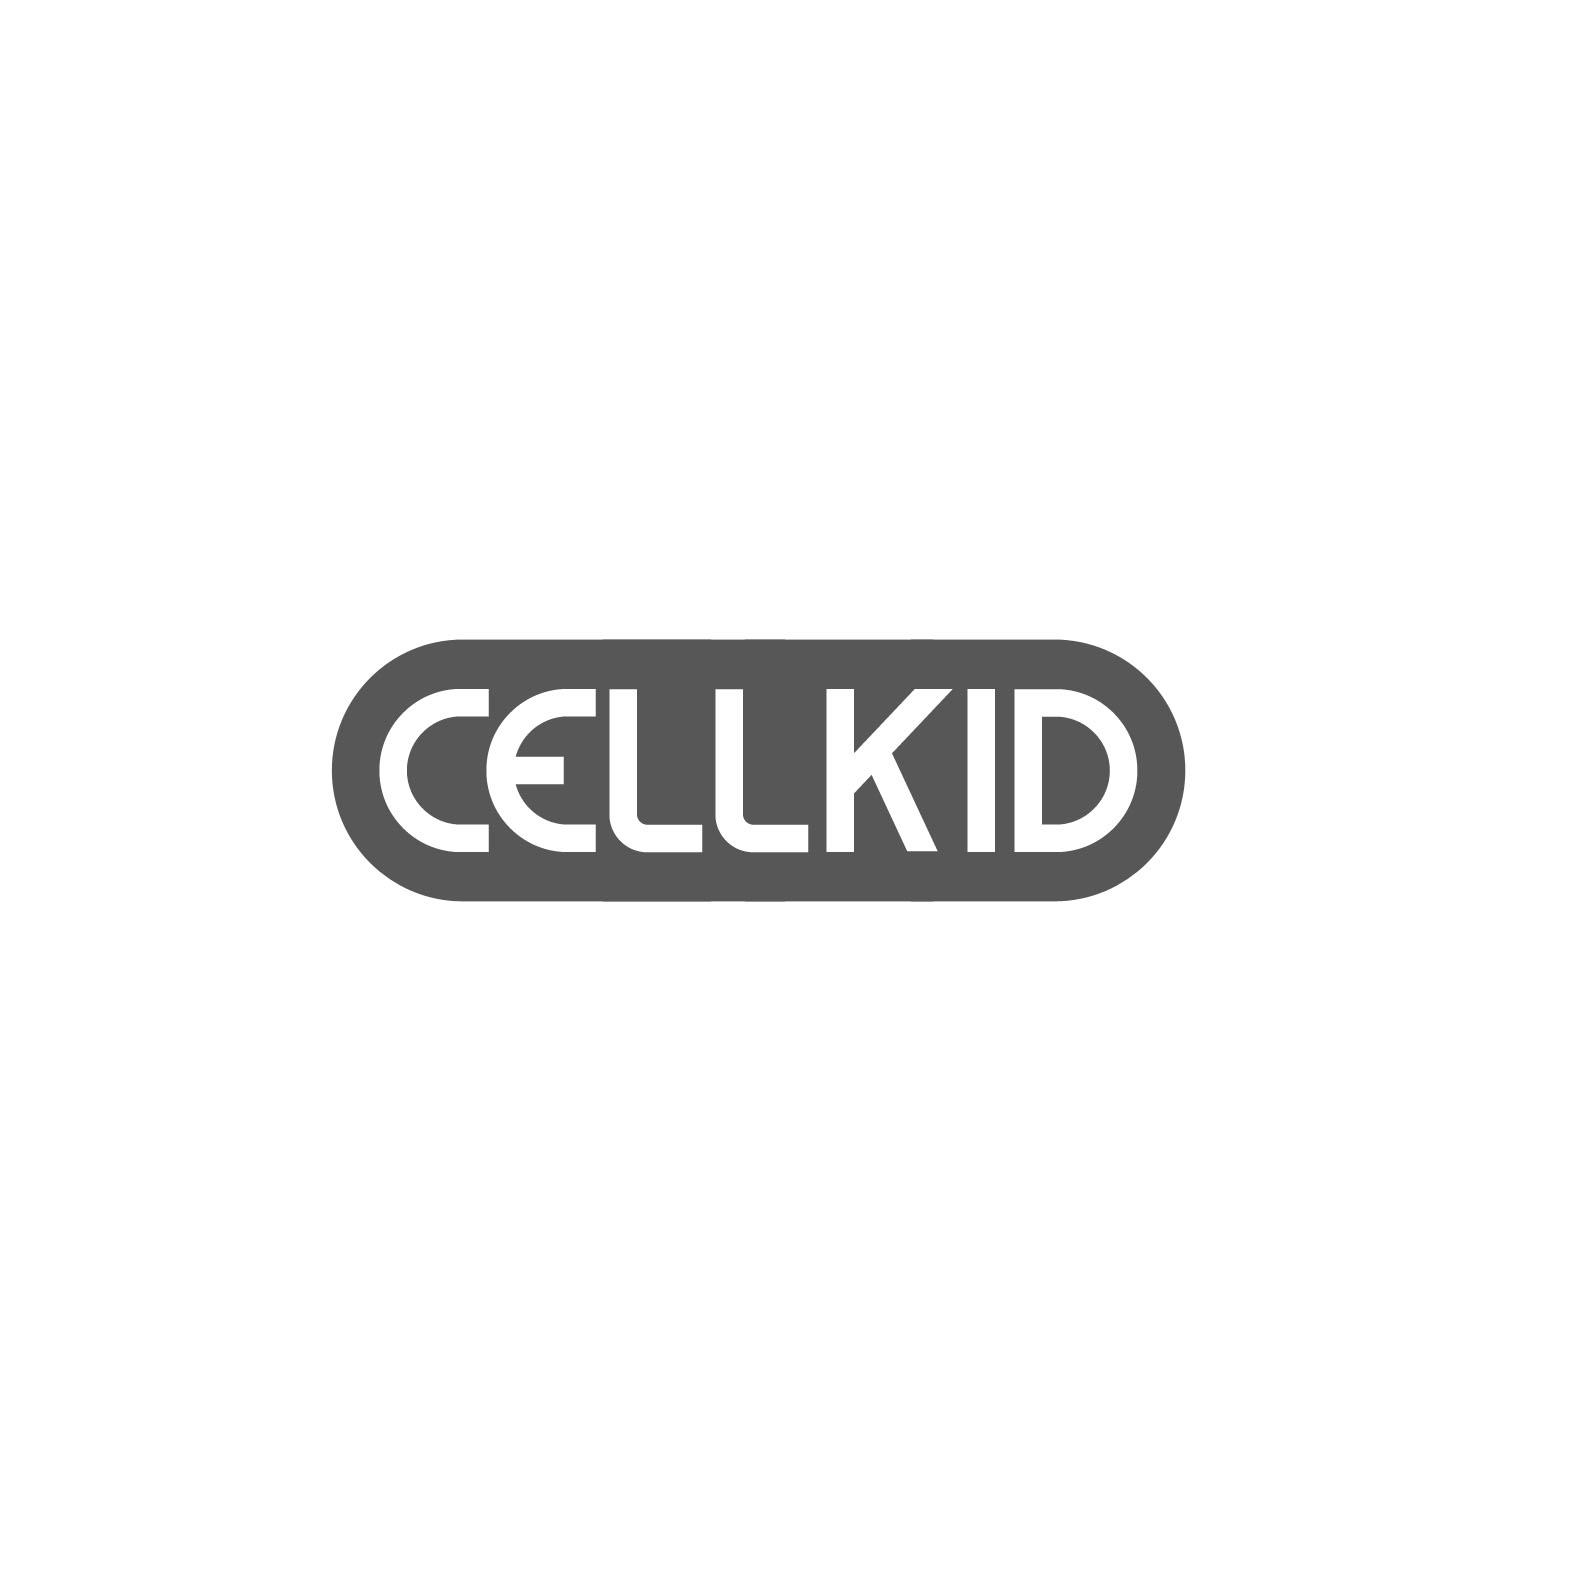 10类-医疗器械CELLKID商标转让